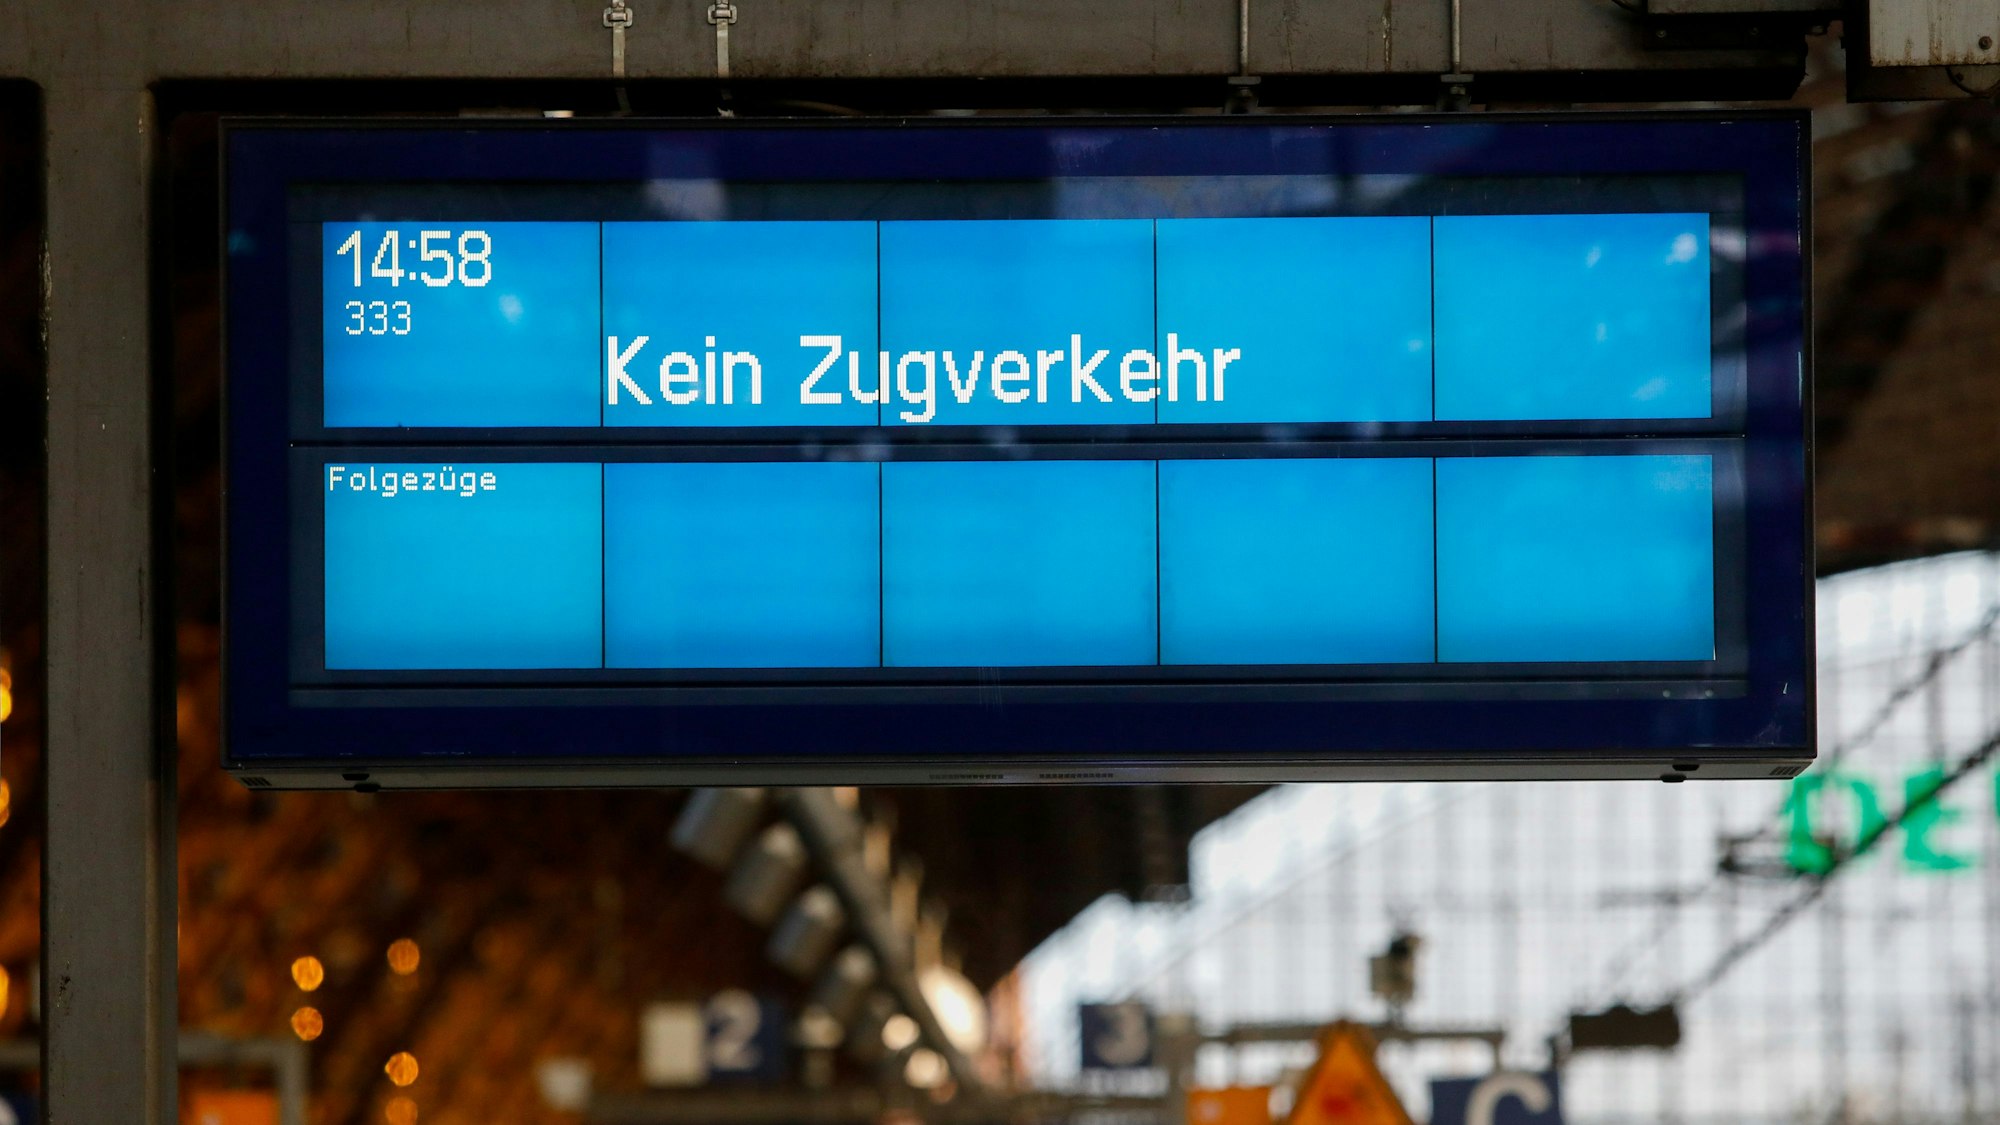 Am Kölner Hauptbahnhof steht auf einer Anzeigetafel „Kein Zugverkehr“.